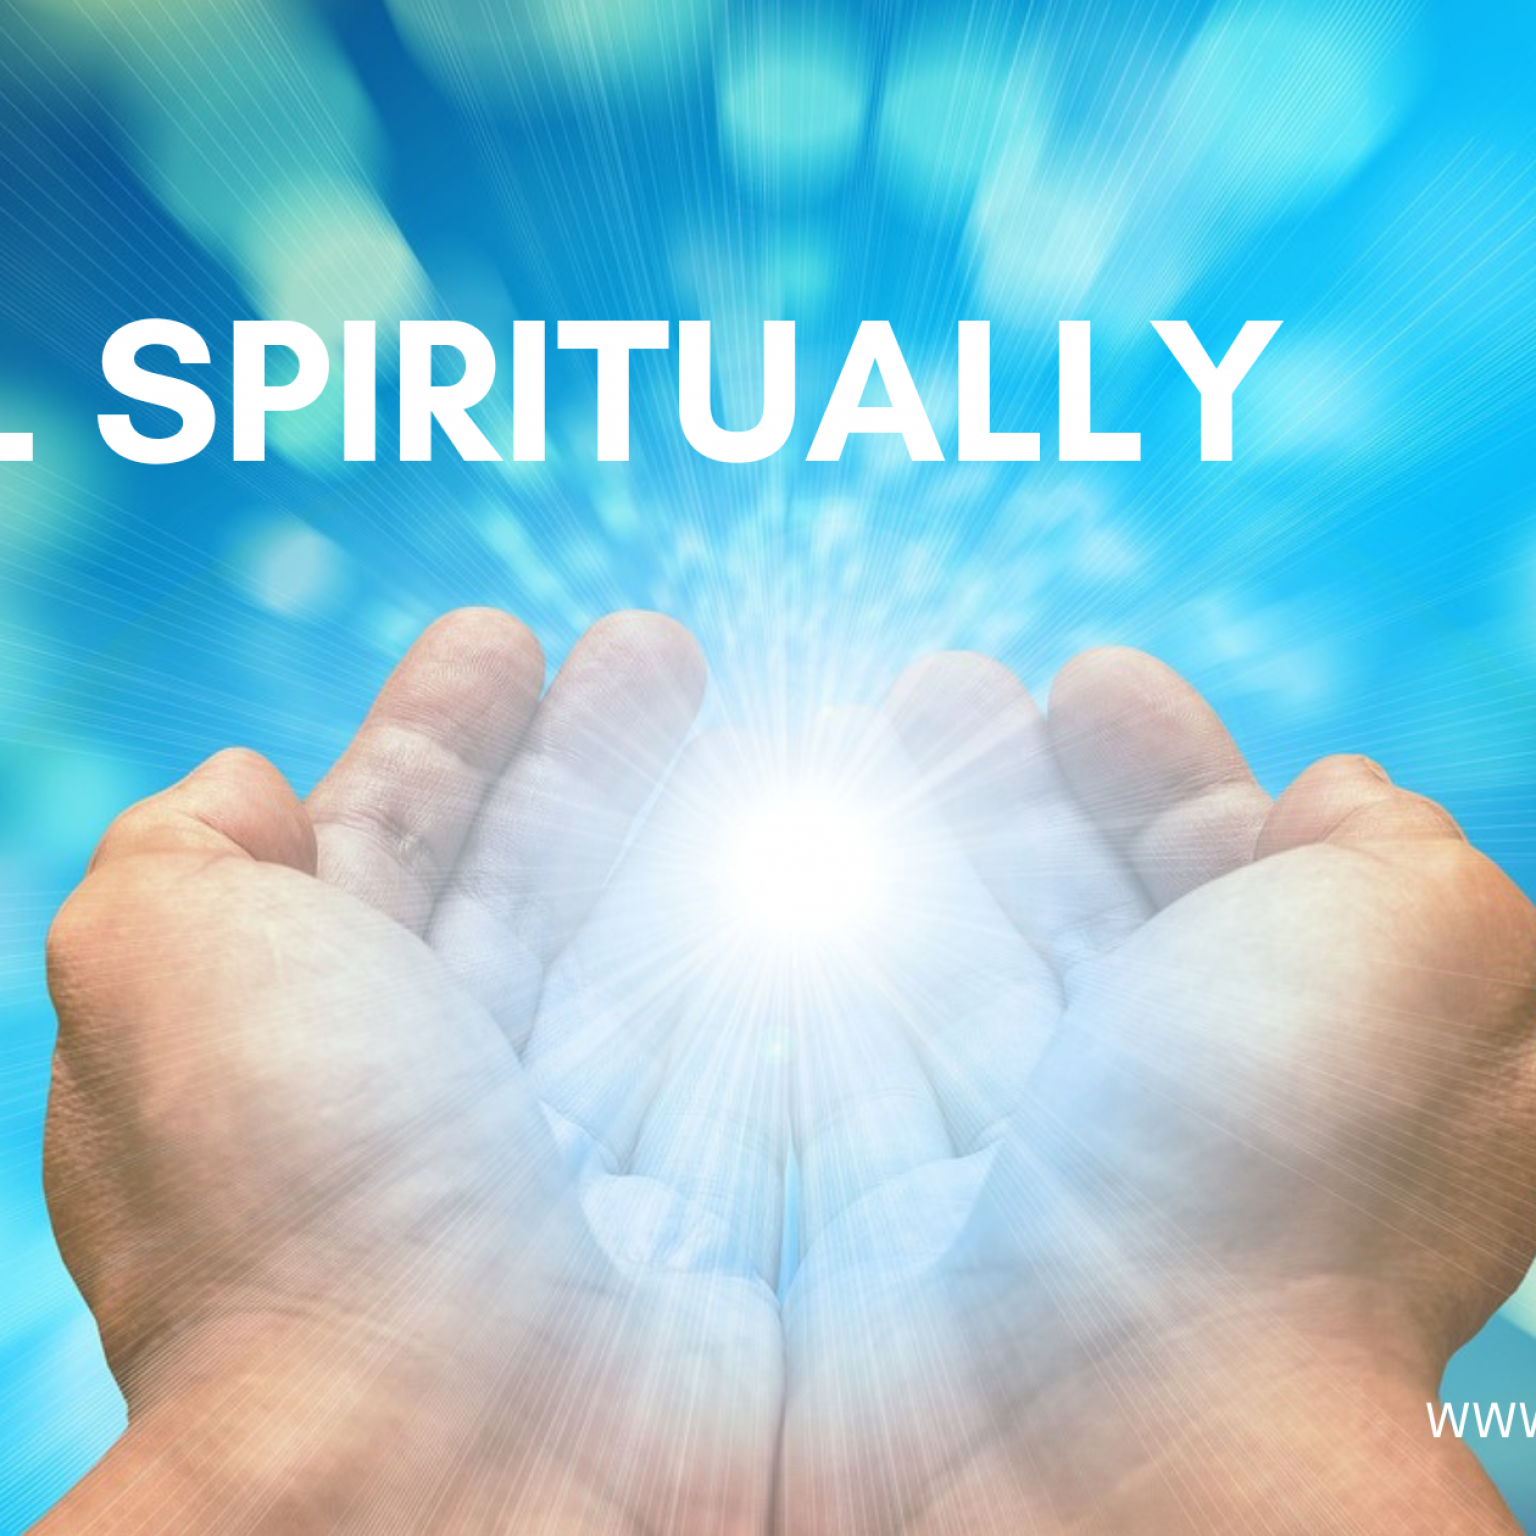 how to heal spiritually